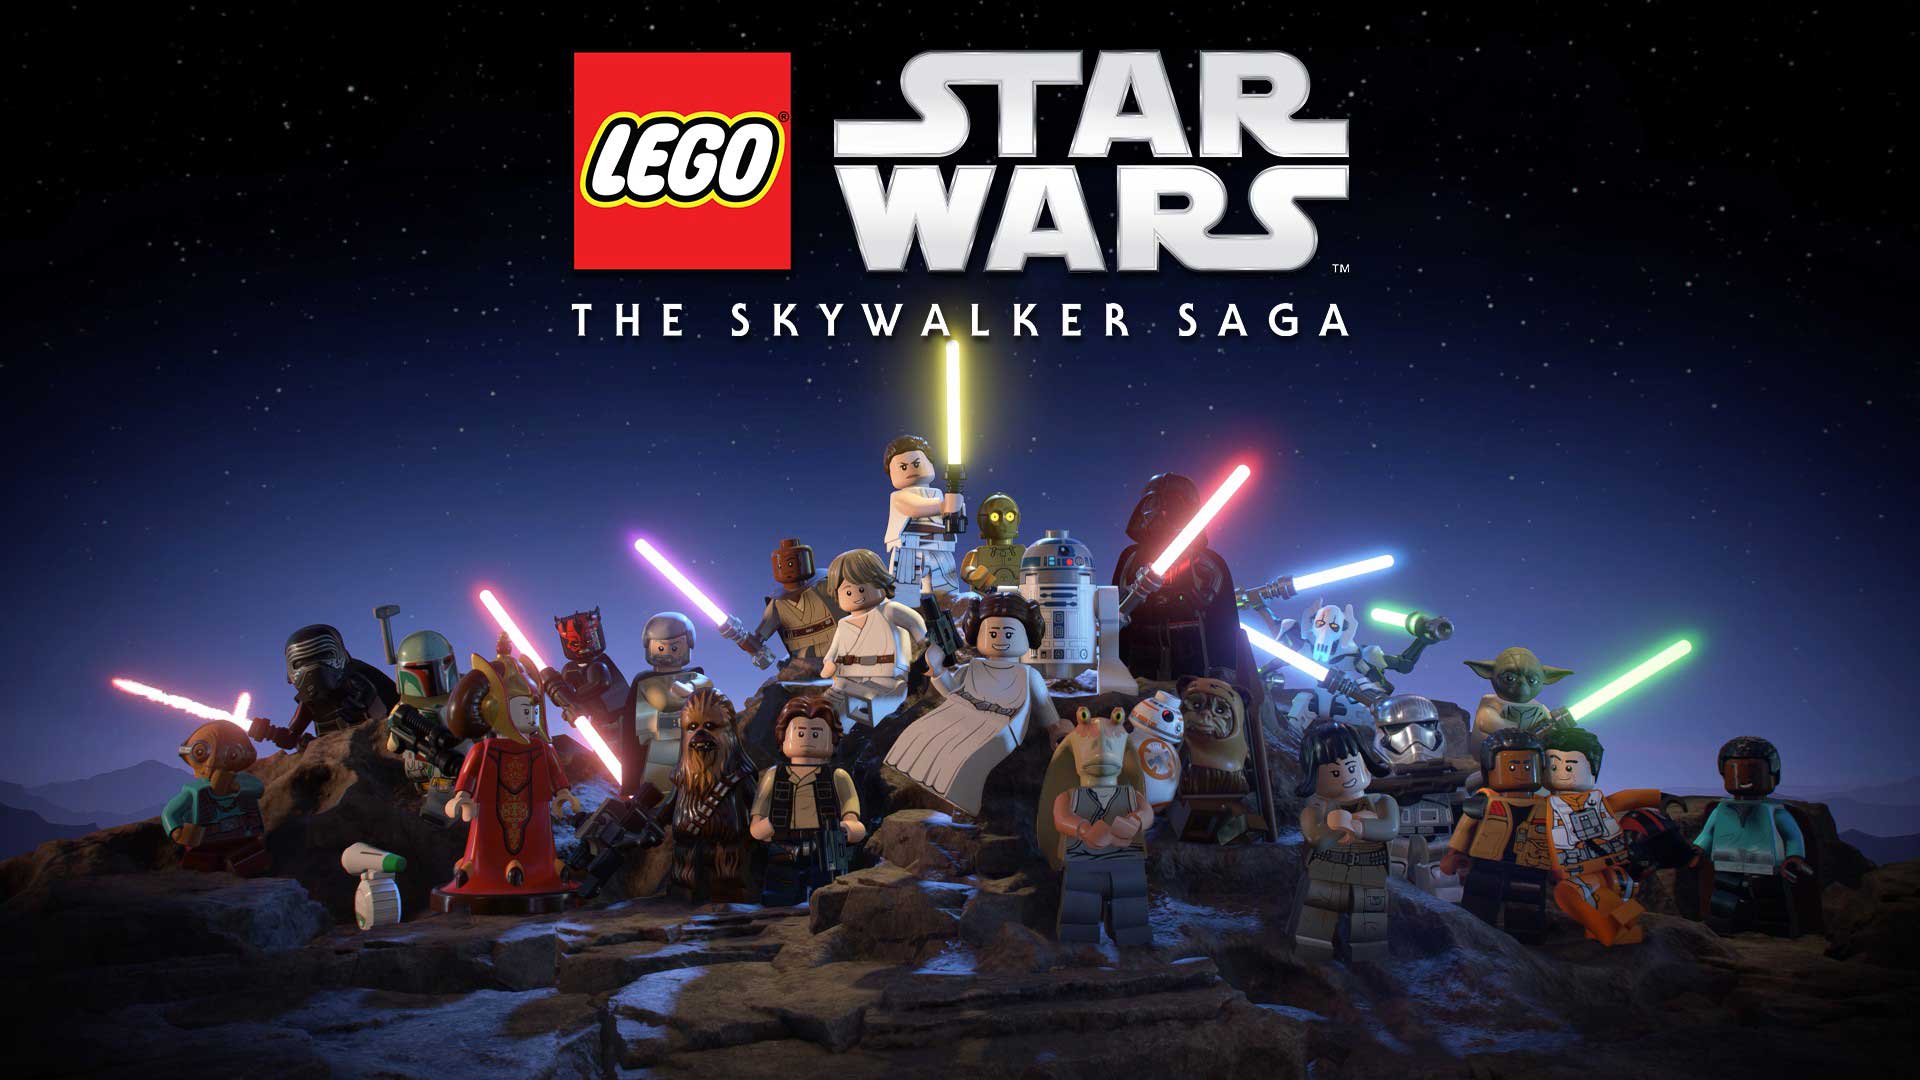 LEGO Star Wars جدید رکورد بازیکنان همزمان بازی های لگو را شکست